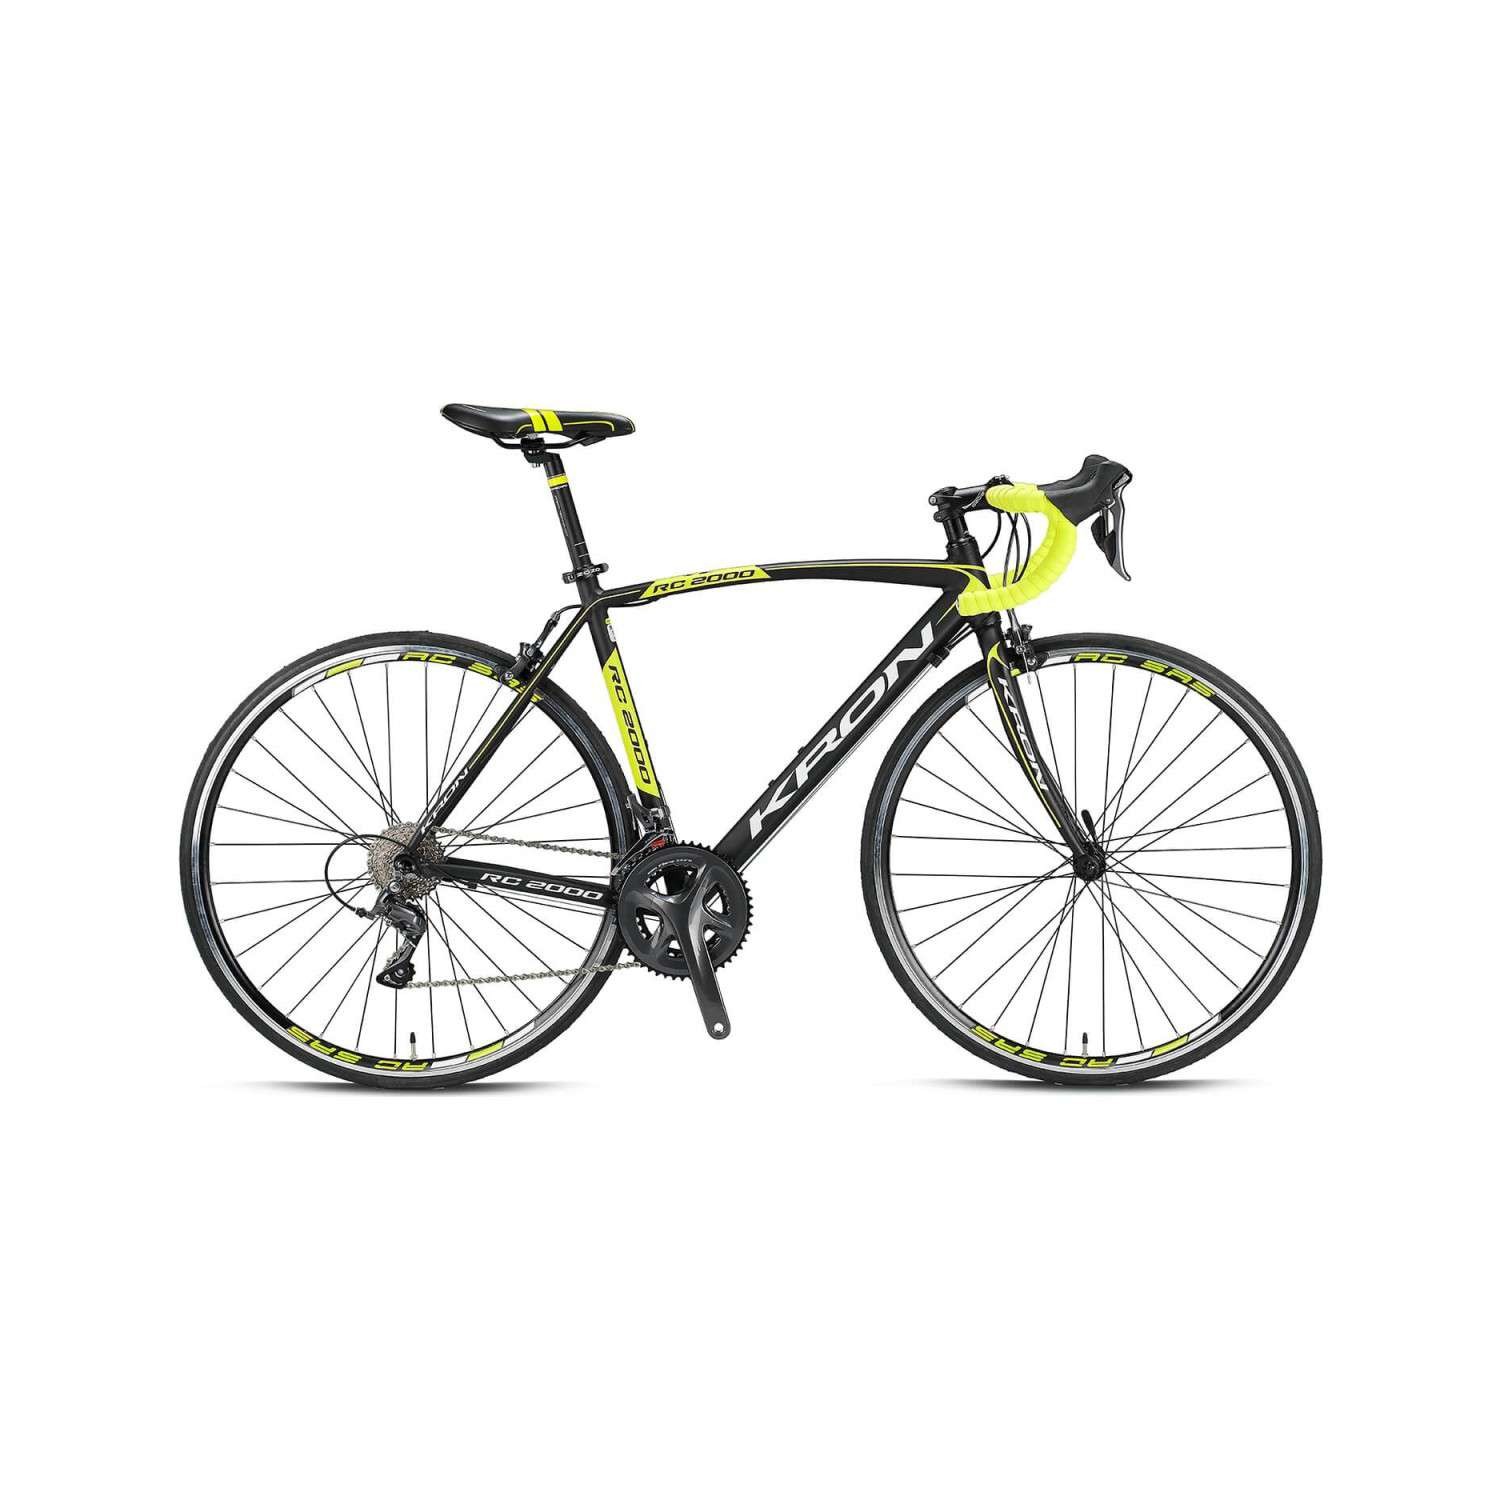 Kron RC 2000 Yol Bisikleti - Siyah/Yeşil